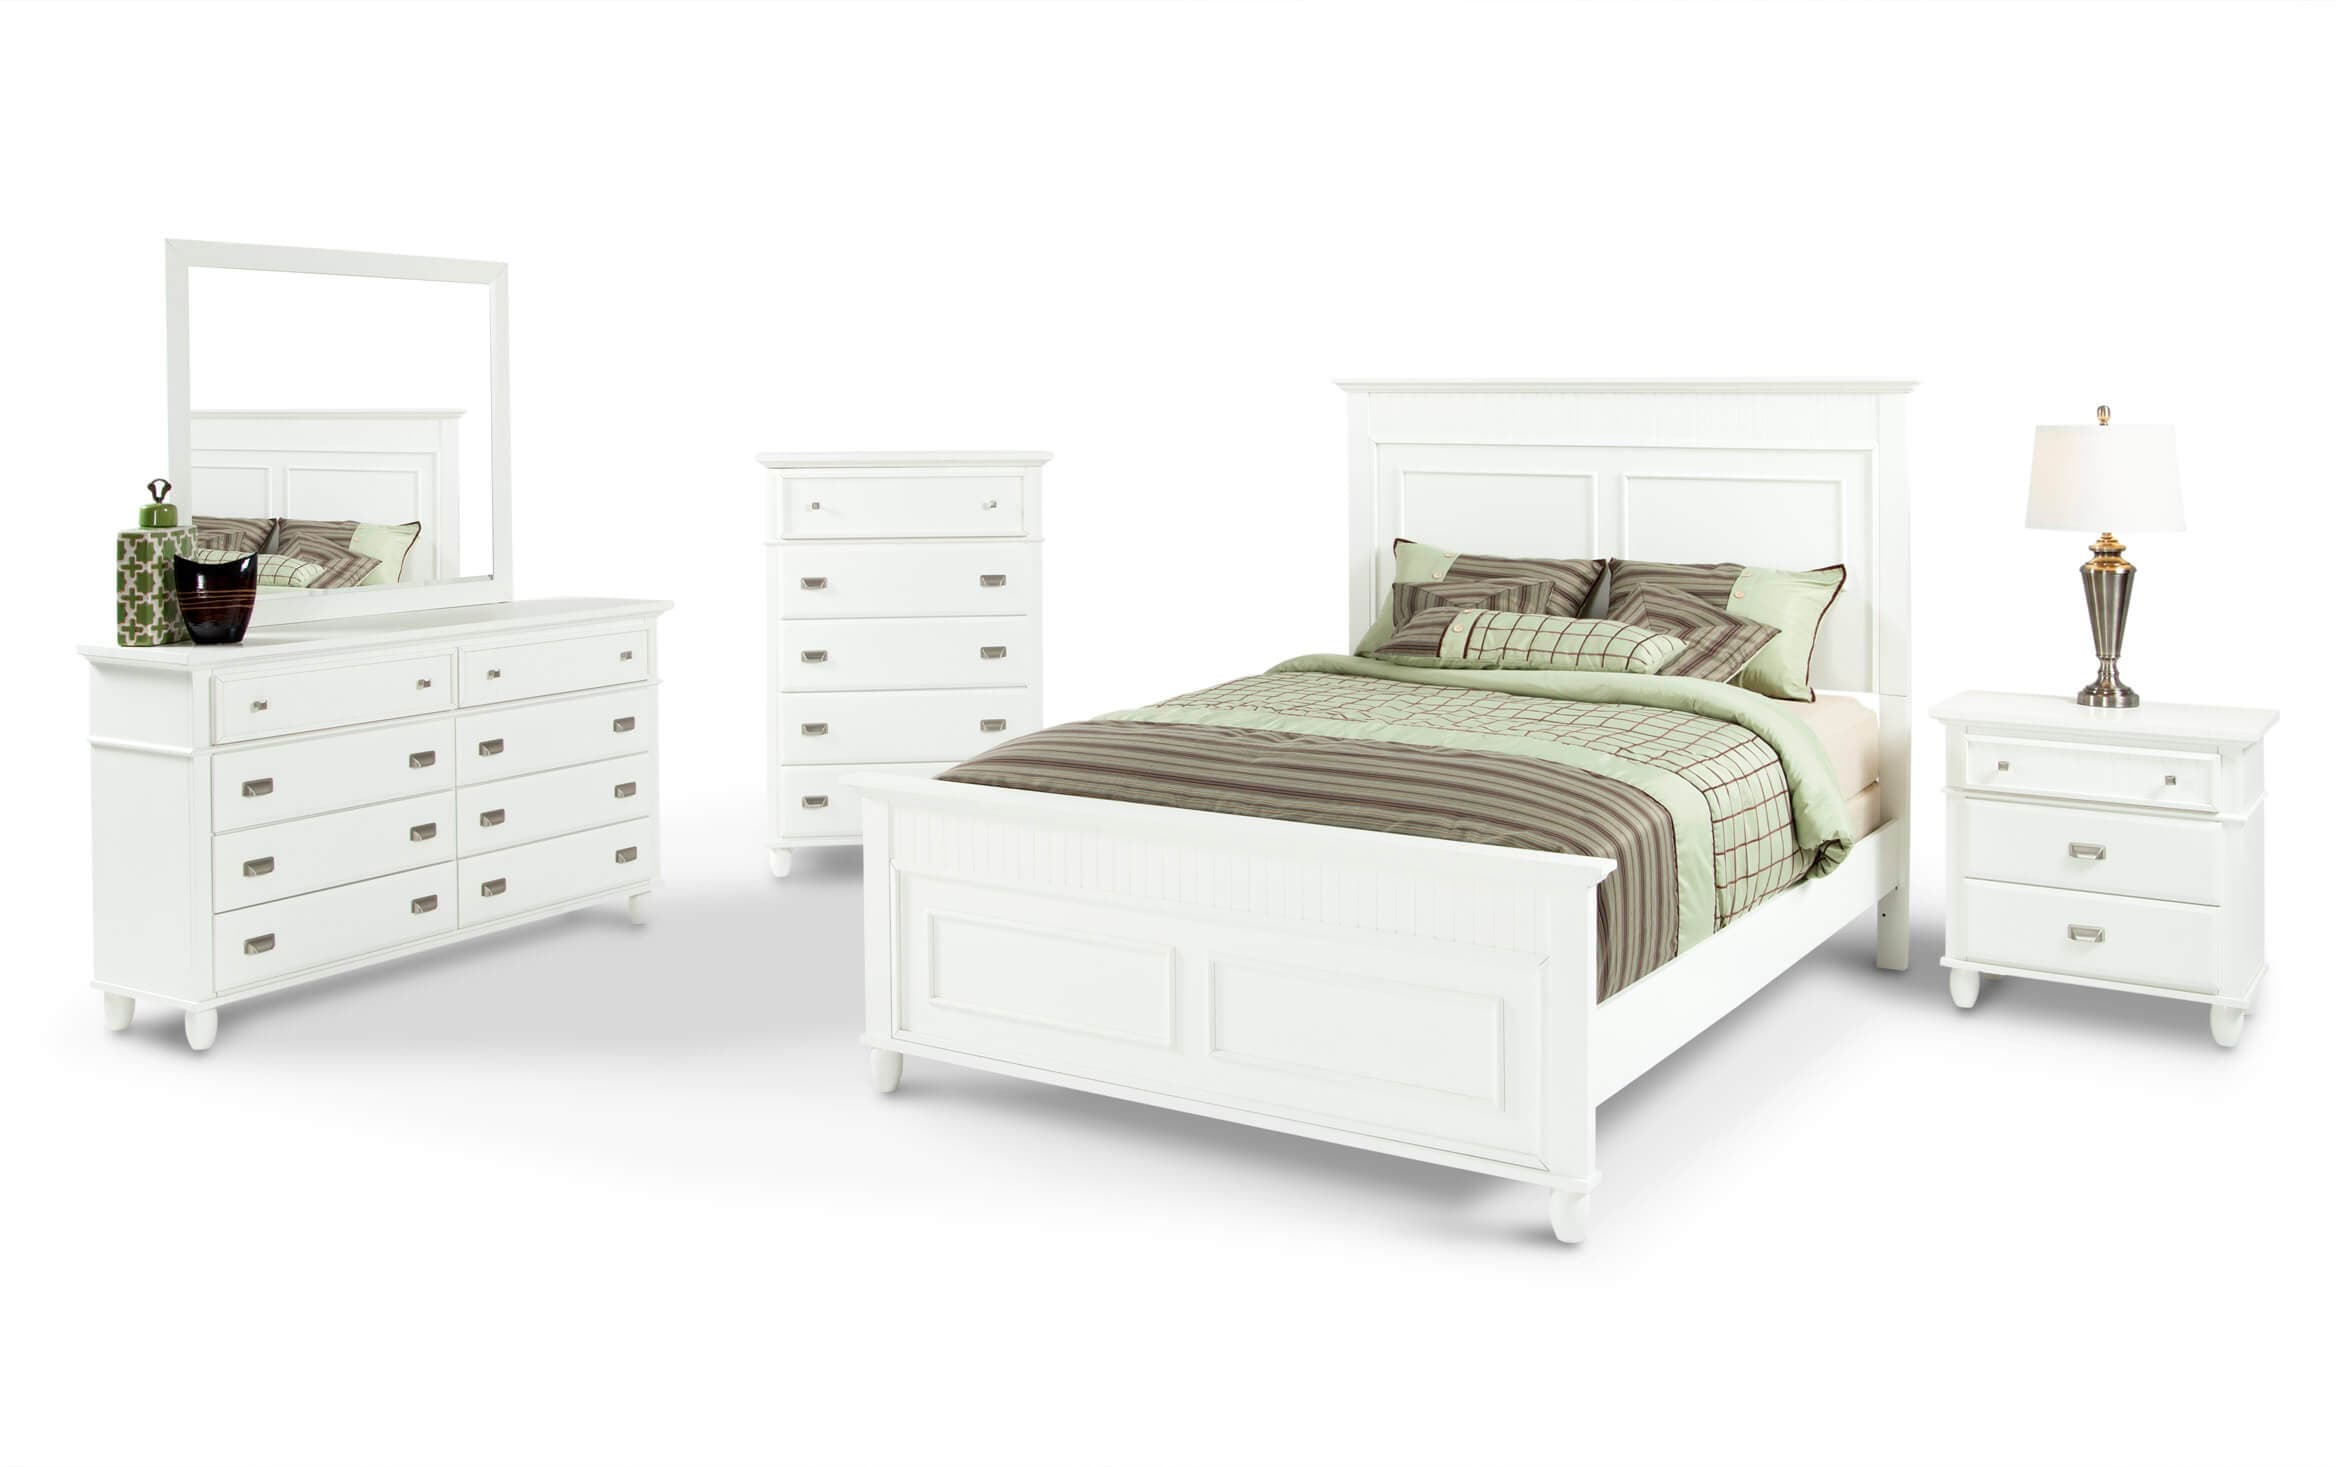 Spencer bed bobs furniture